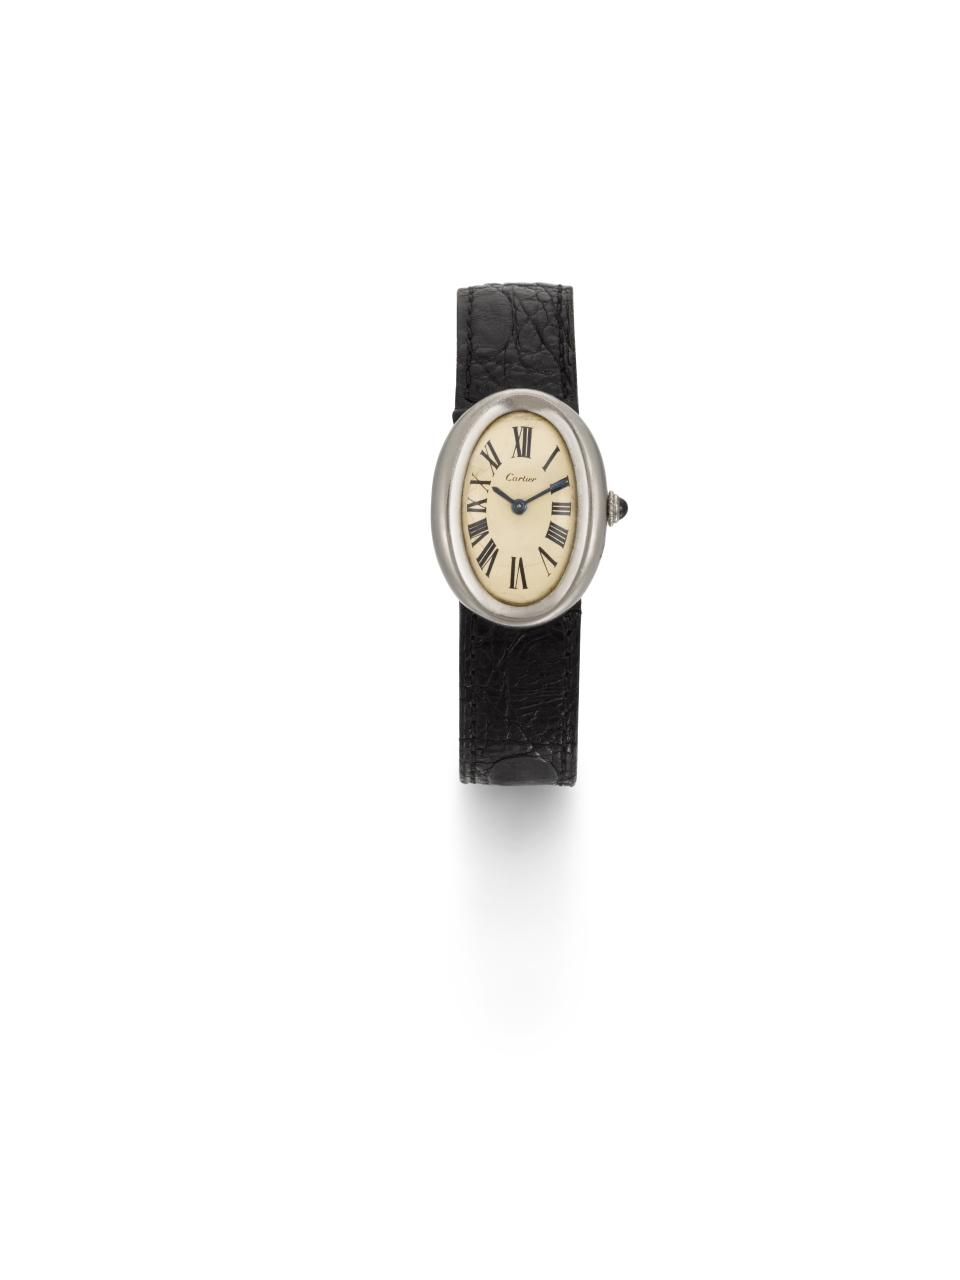 Brian Epstein’s watch (Sotheby’s)